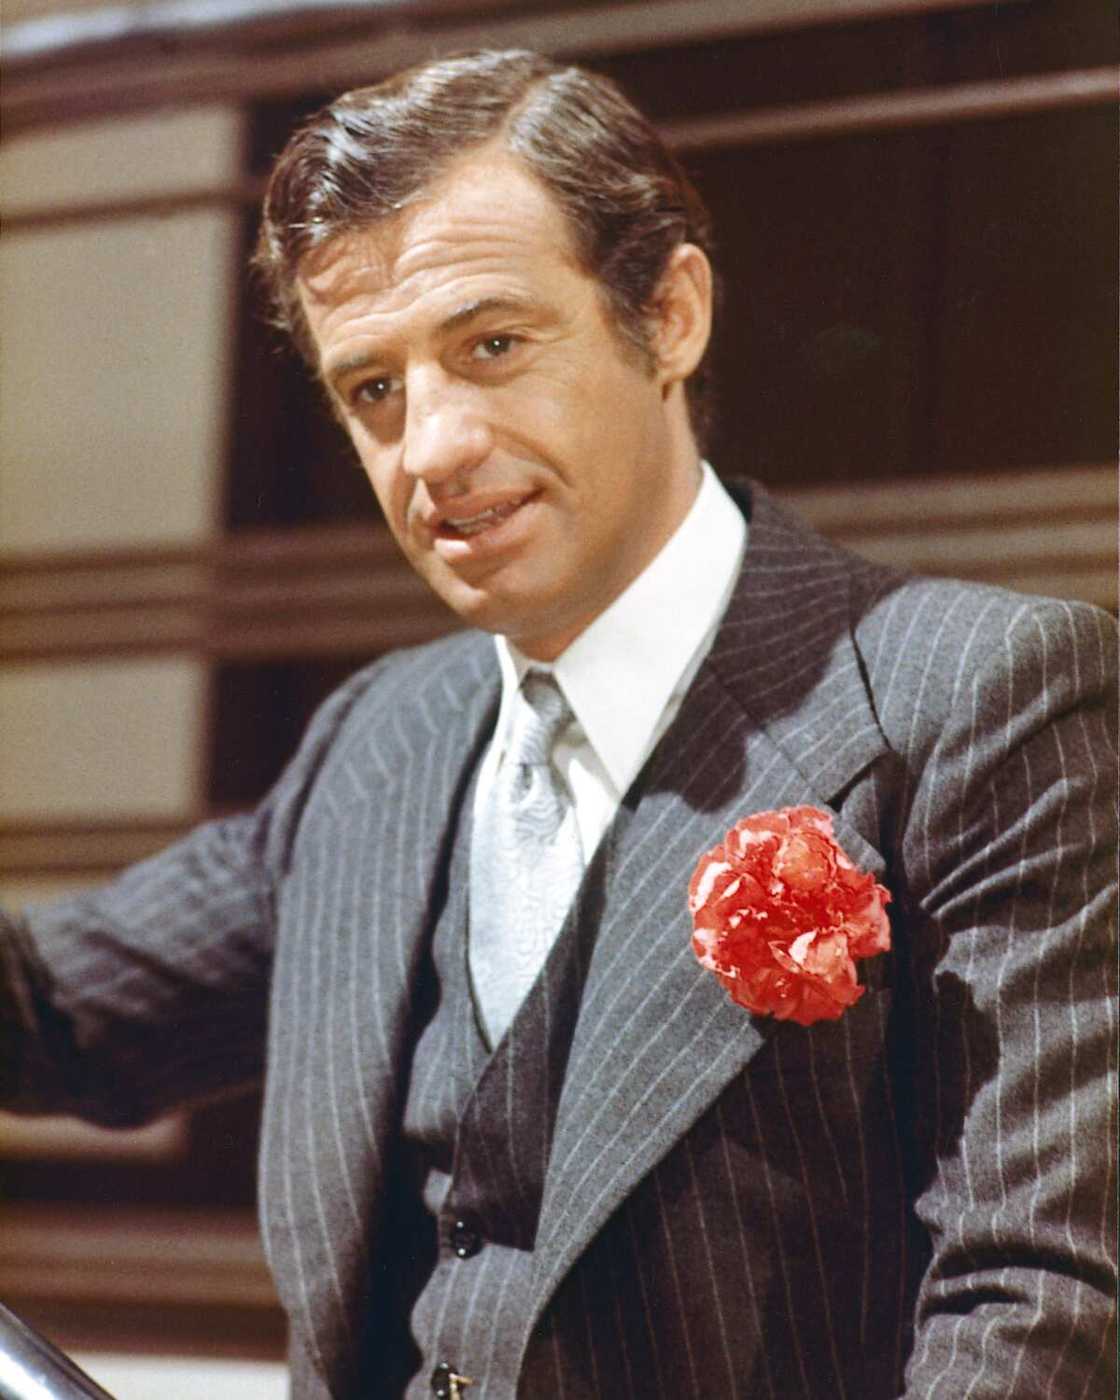 Jean-Paul Belmondo, acteur français, jurant un costume à fines rayures bleu foncé, avec un gilet assorti, une chemise blanche et une cravate gris clair, avec une fleur rouge au revers, vers 1960. (Photo de Silver Screen Collection)